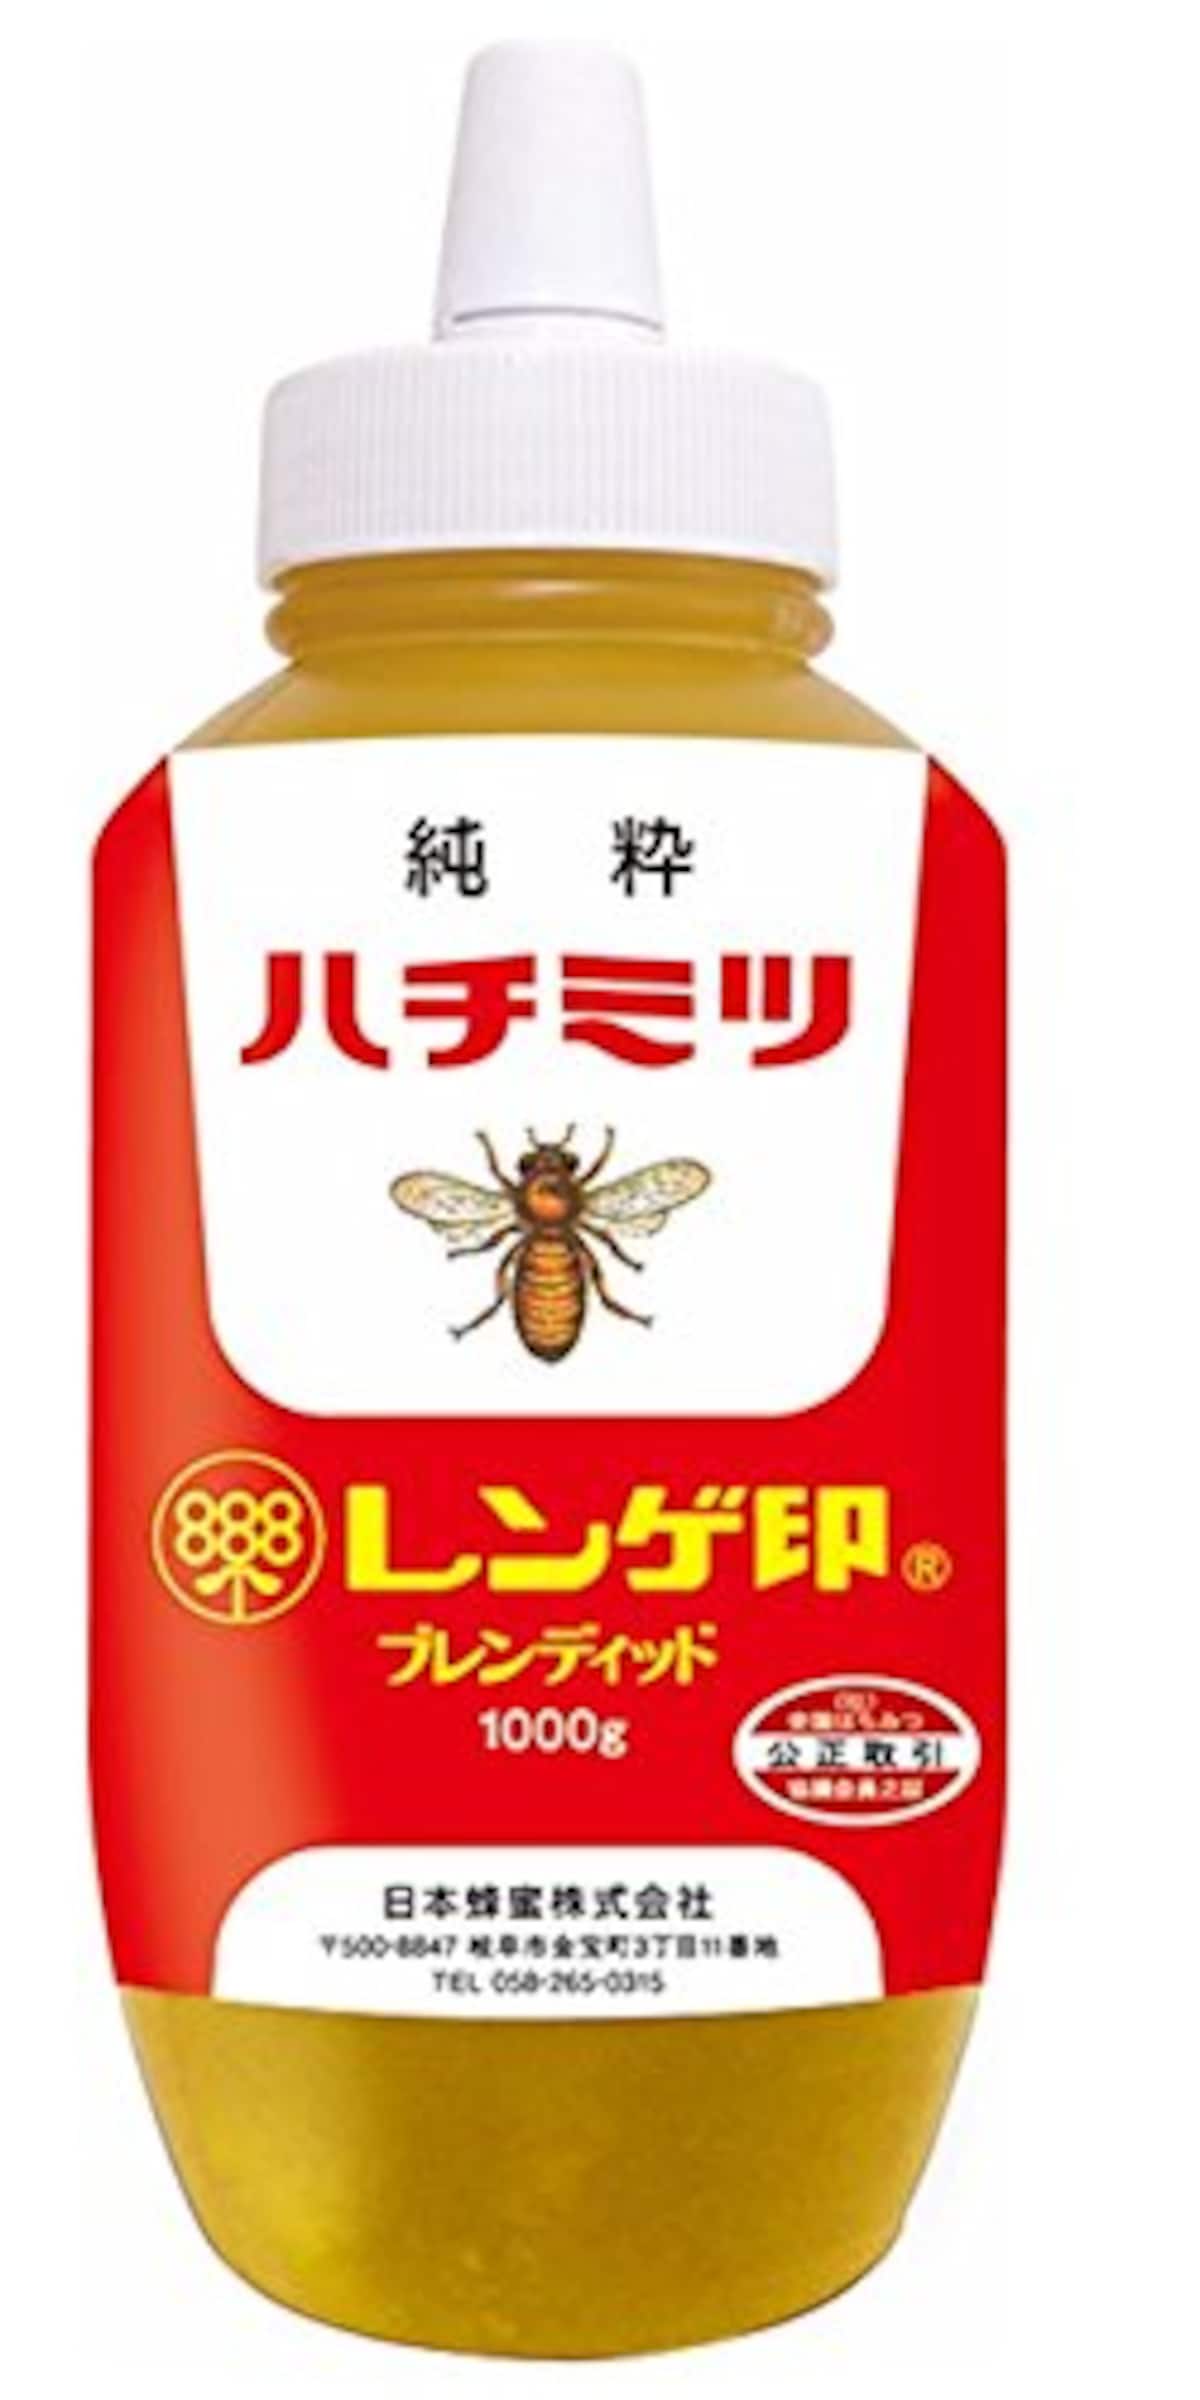  ハチミツ画像2 